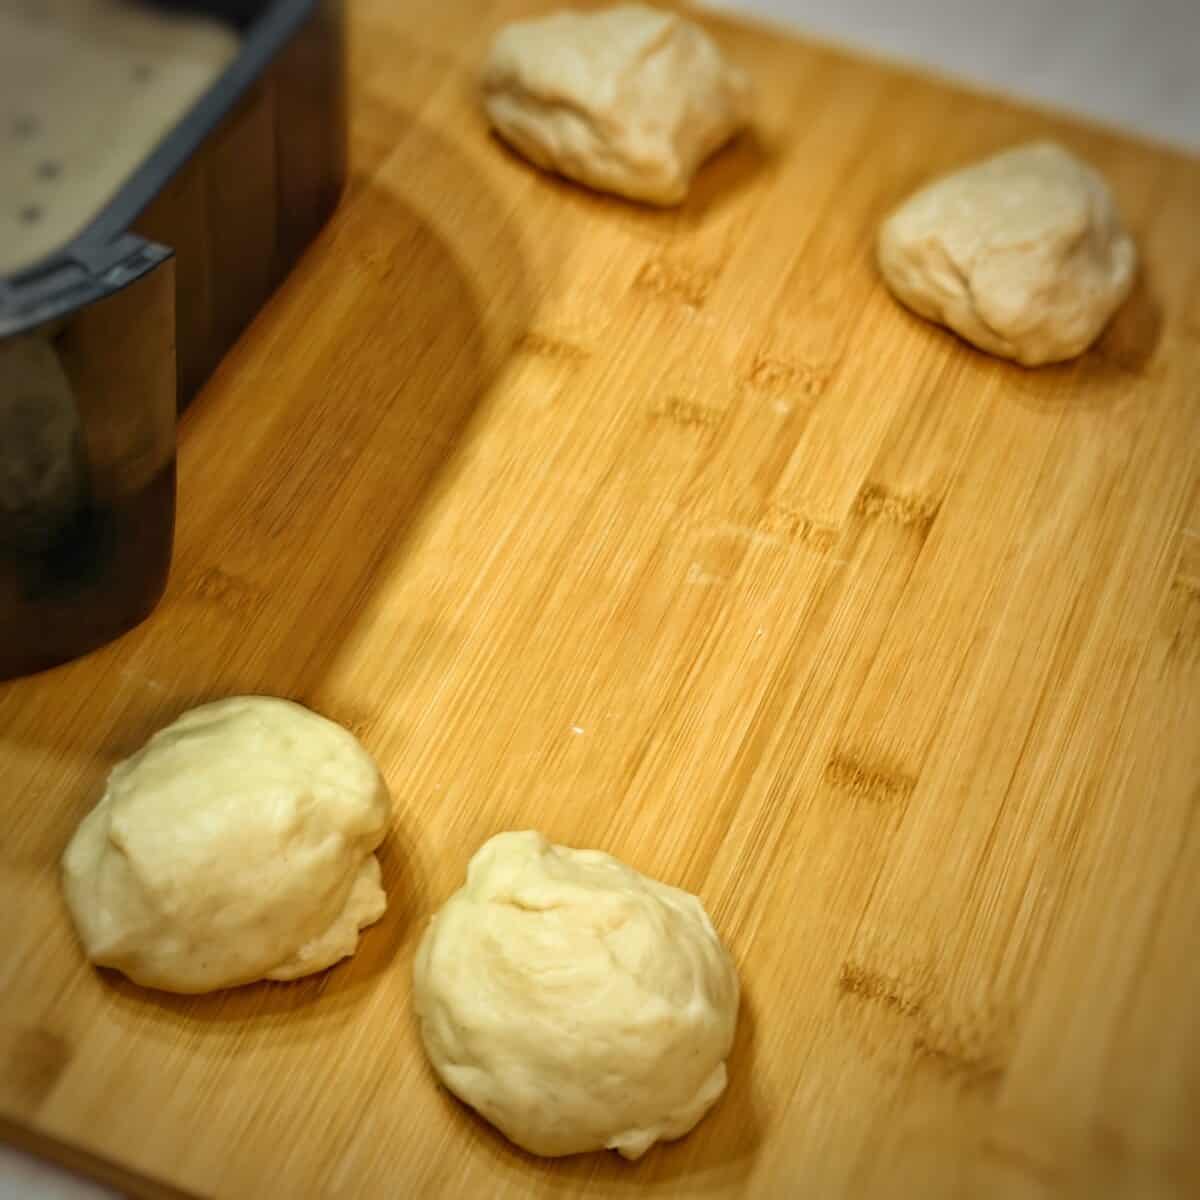 4 small dough balls